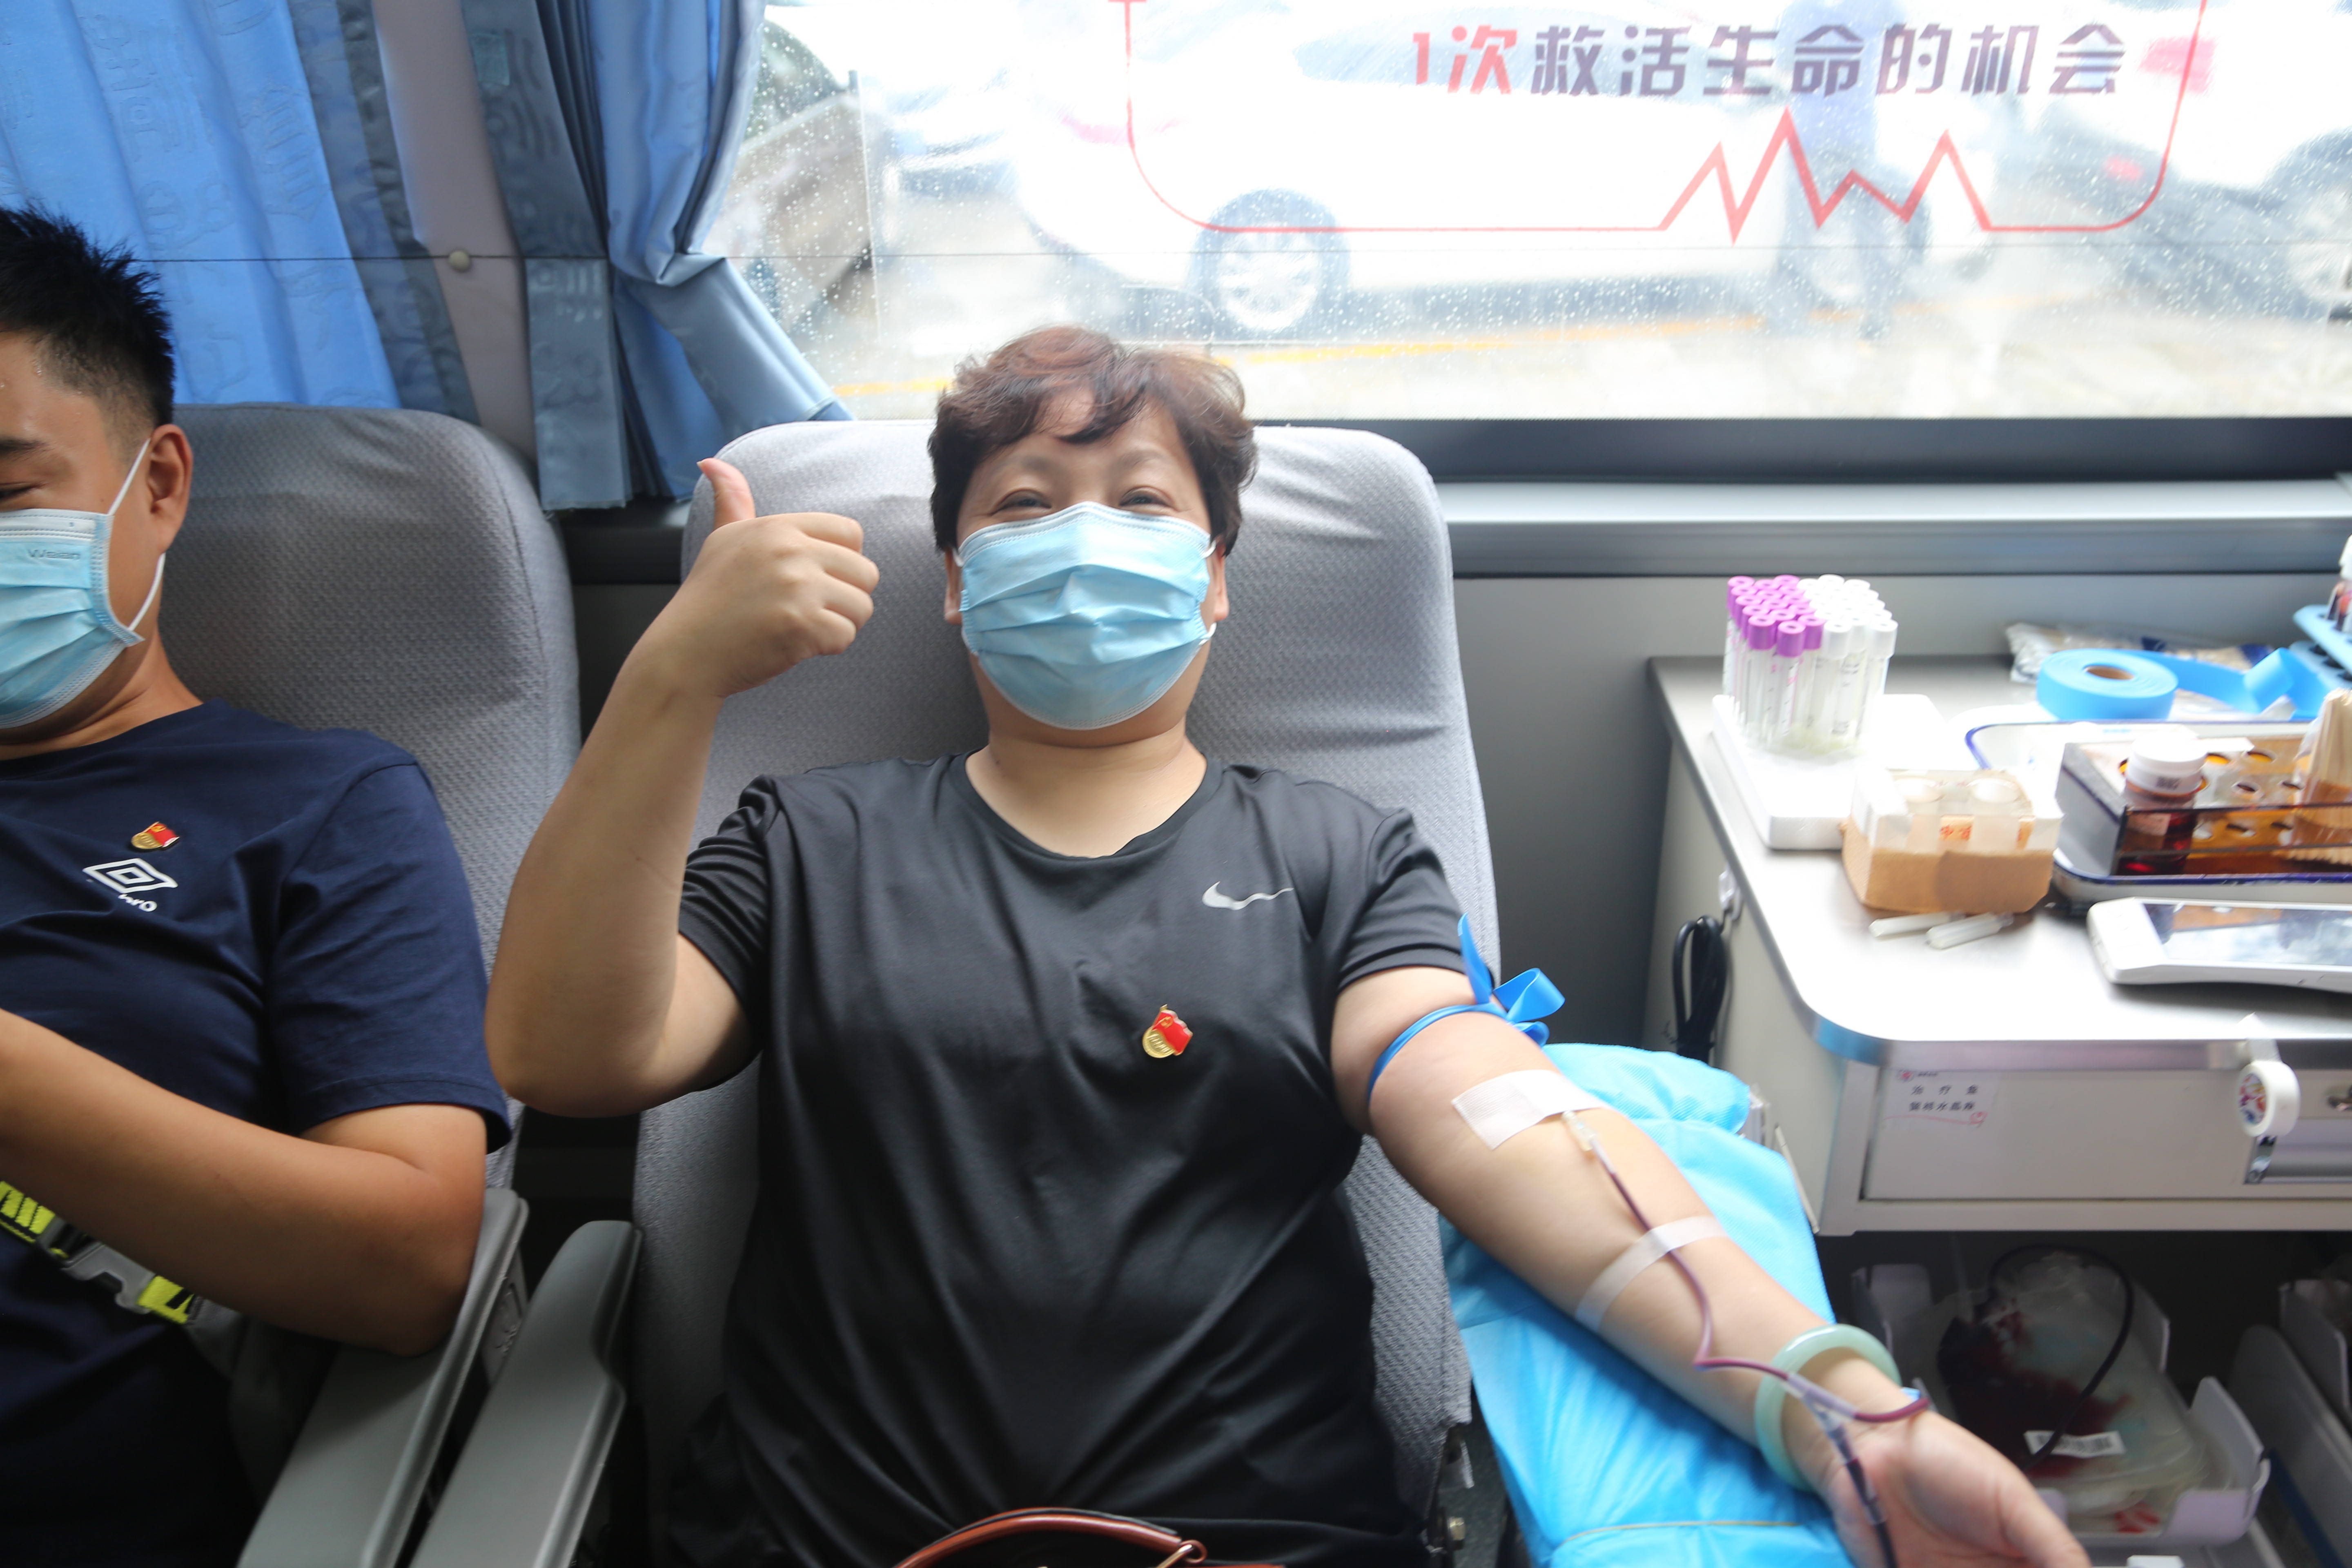 奉献爱心助力生命淄博市广播电视台组织开展无偿献血活动